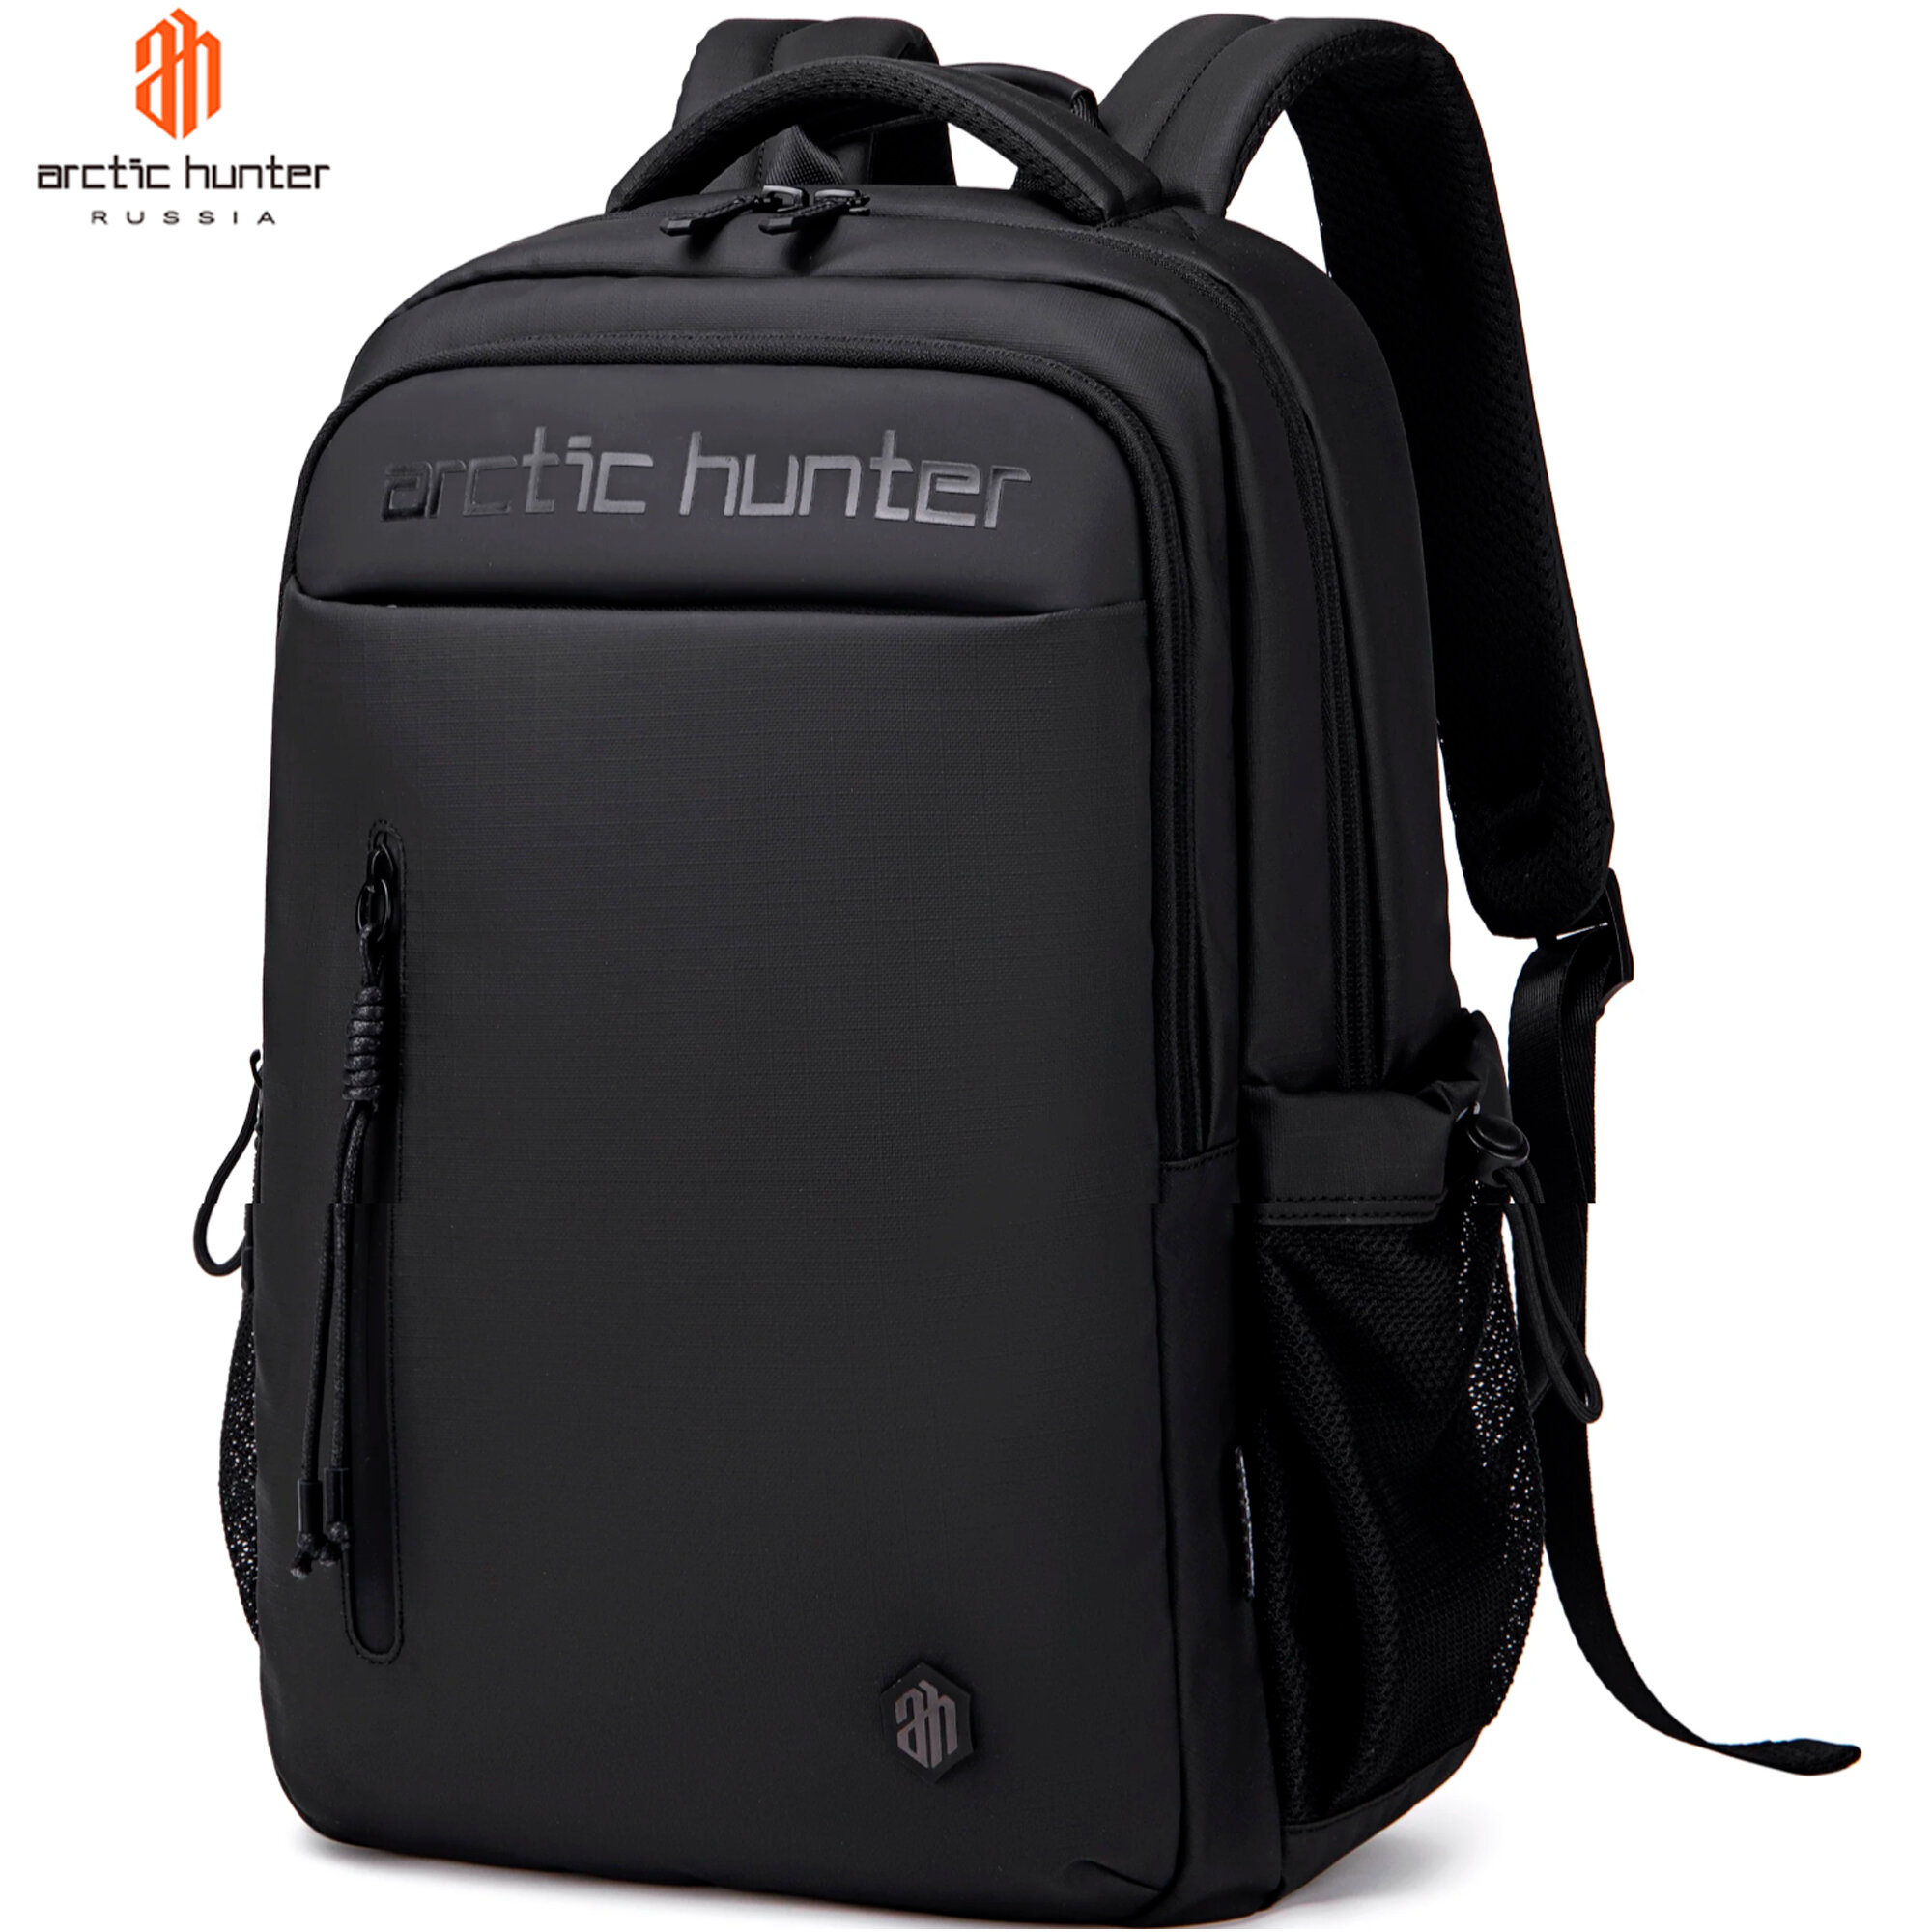 Рюкзак мужской городской, черный, повседневный, водонепроницаемый, школьный, для путешествий, для ноутбука, 21 л, Arctic Hunter